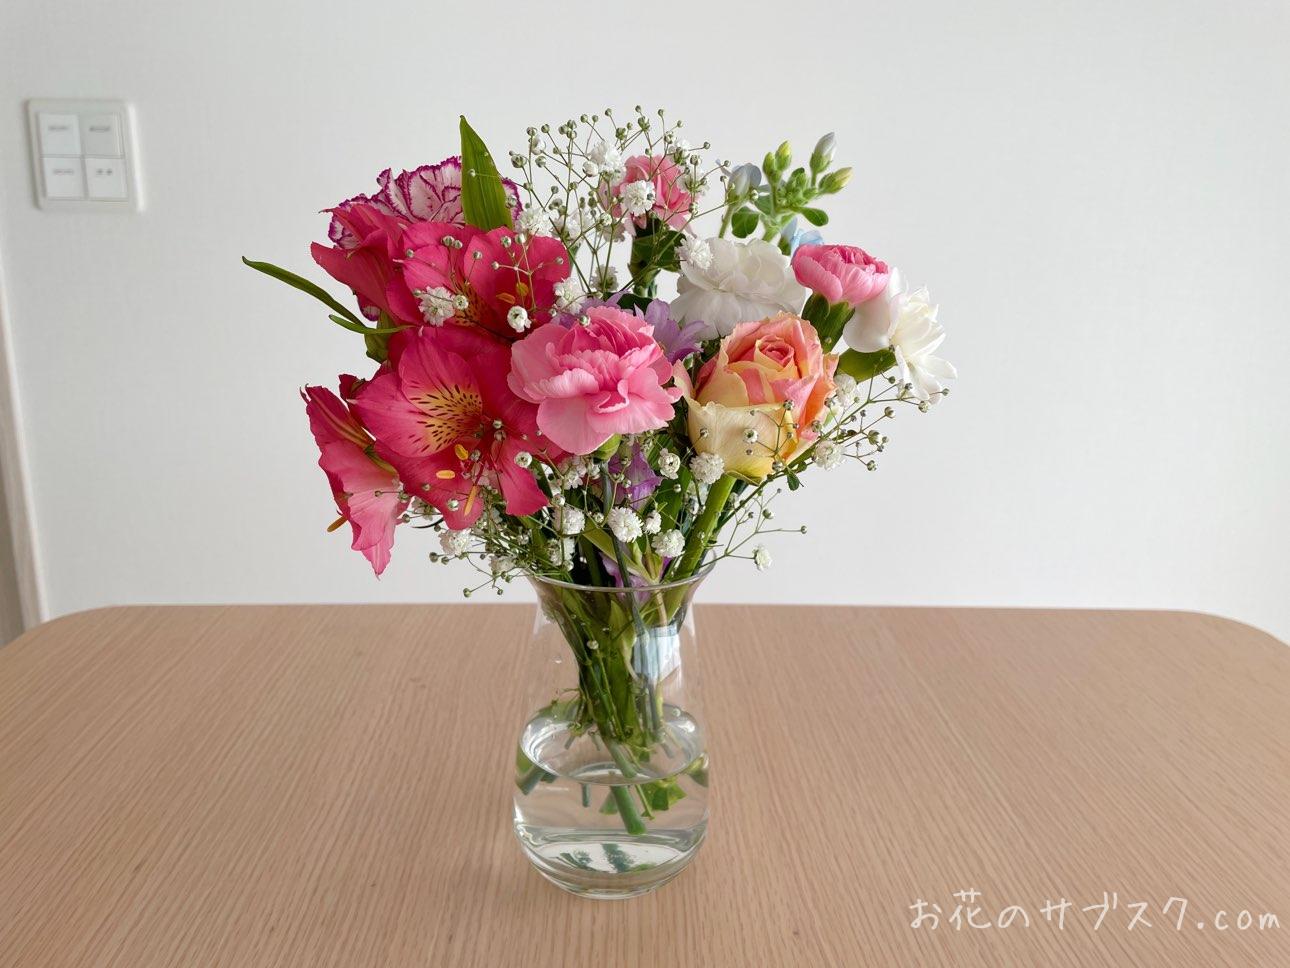 近所の花屋で買った1650円のお花